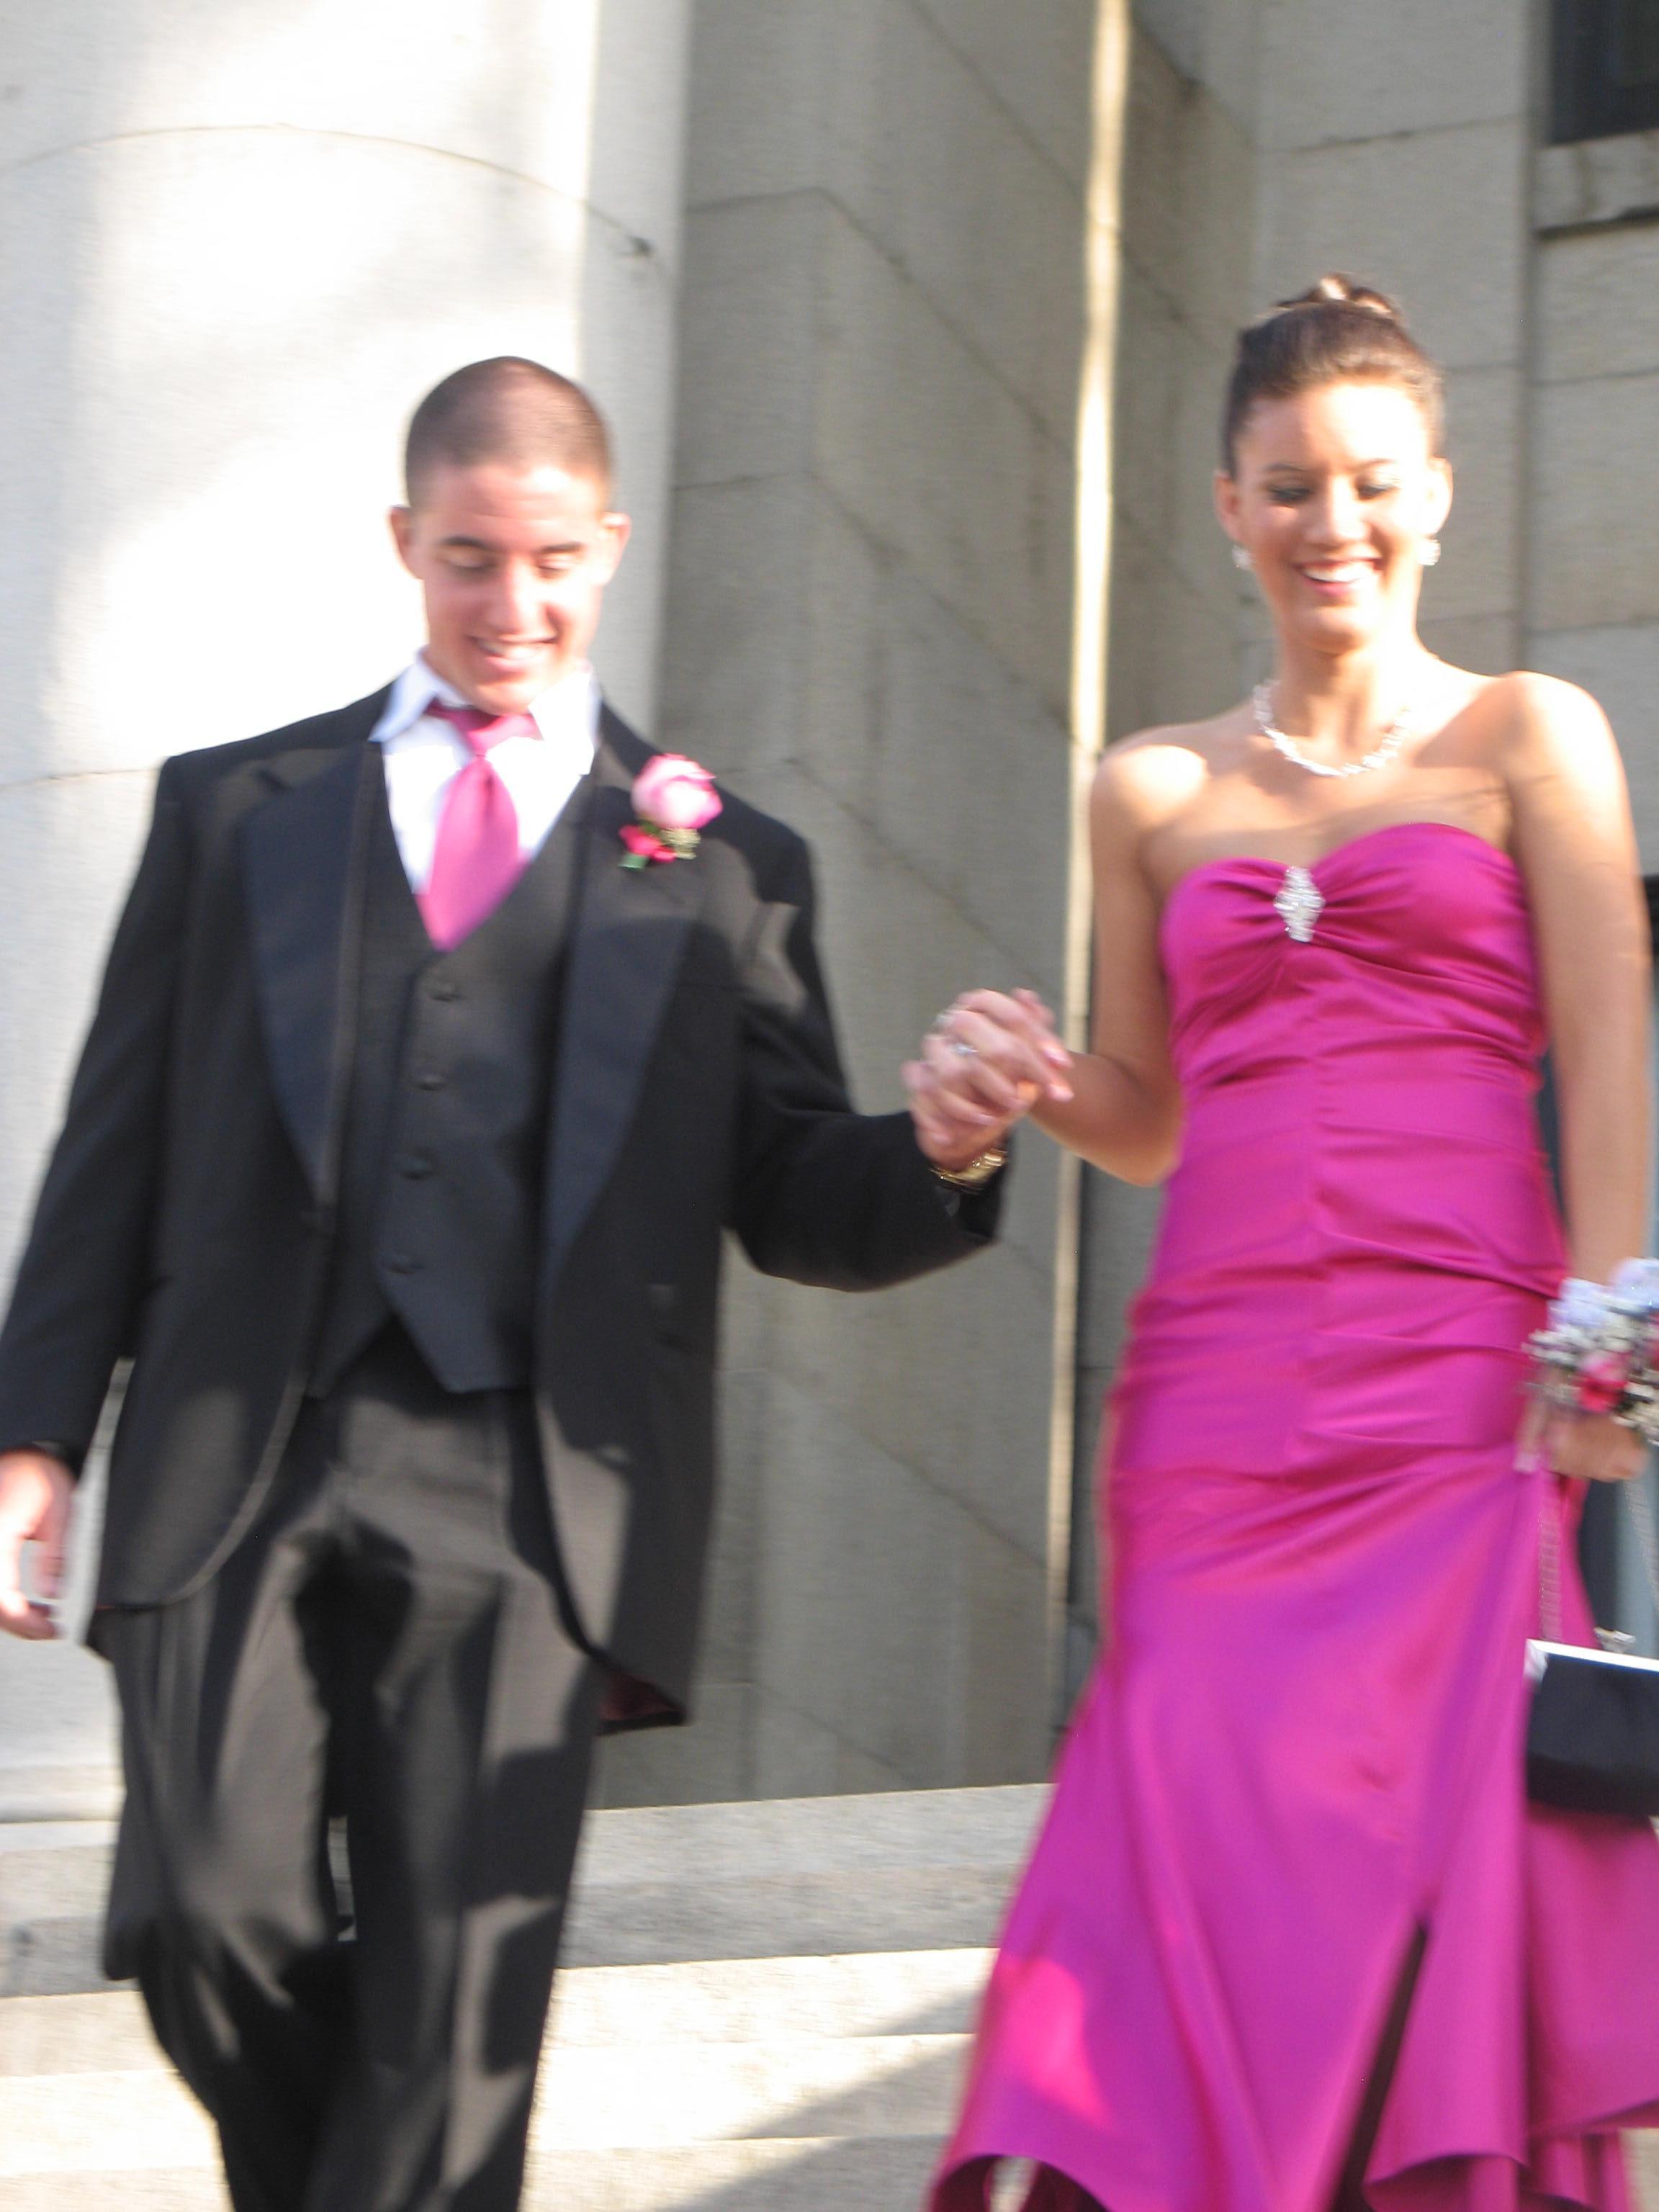 The Wedding Website of Michelle Weiss and Shane Csontos-Popko